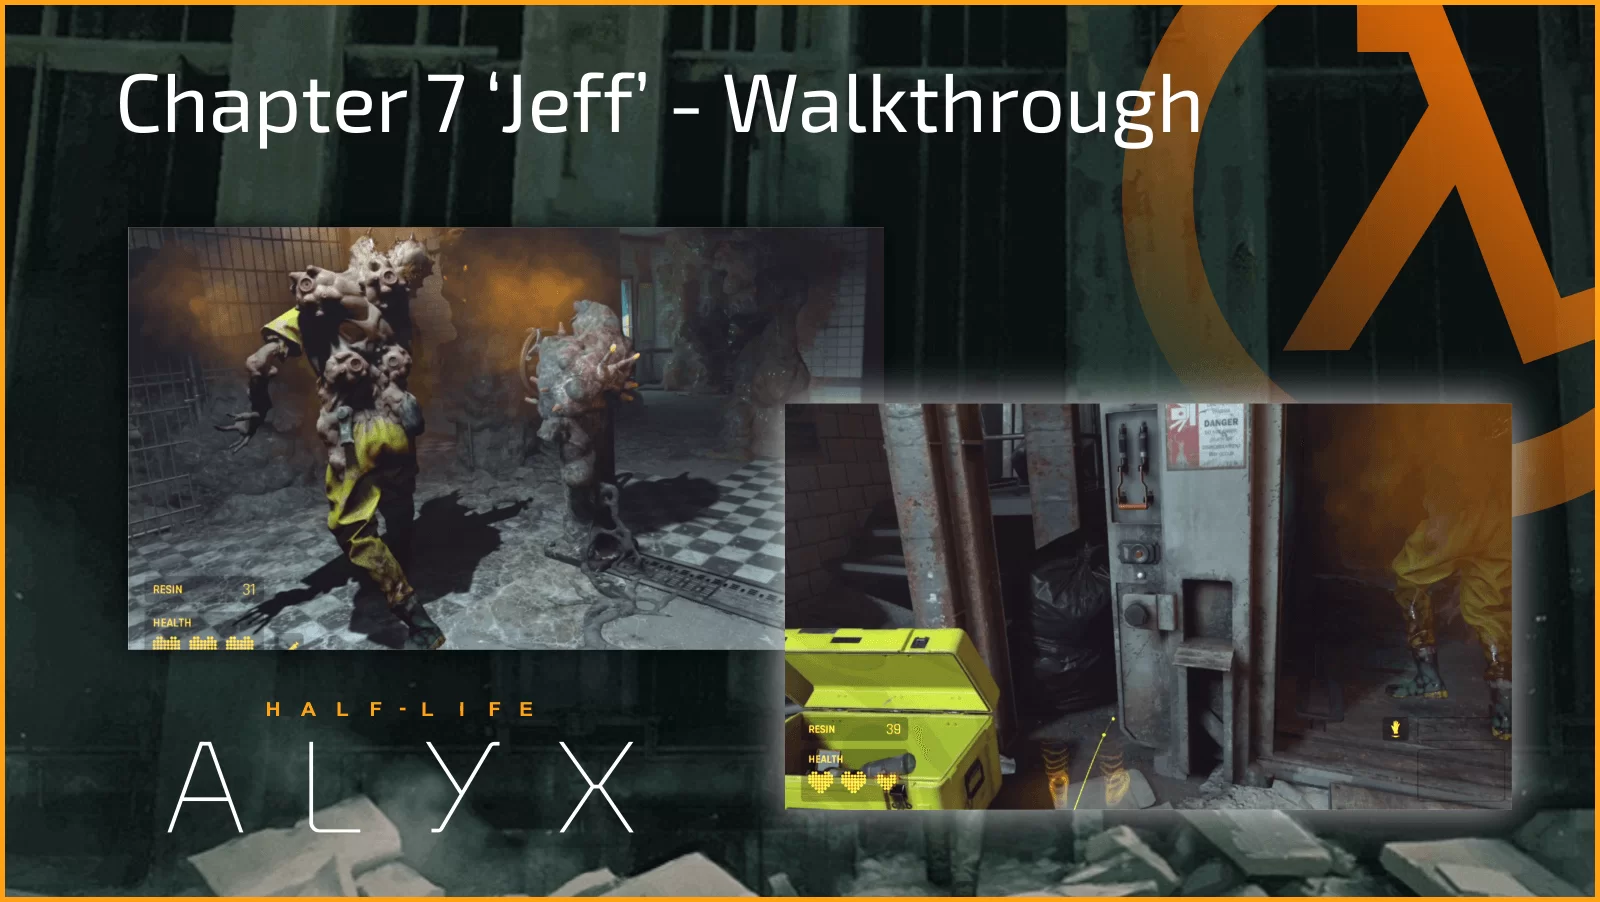 Half-Life Alyx: How to Beat Jeff